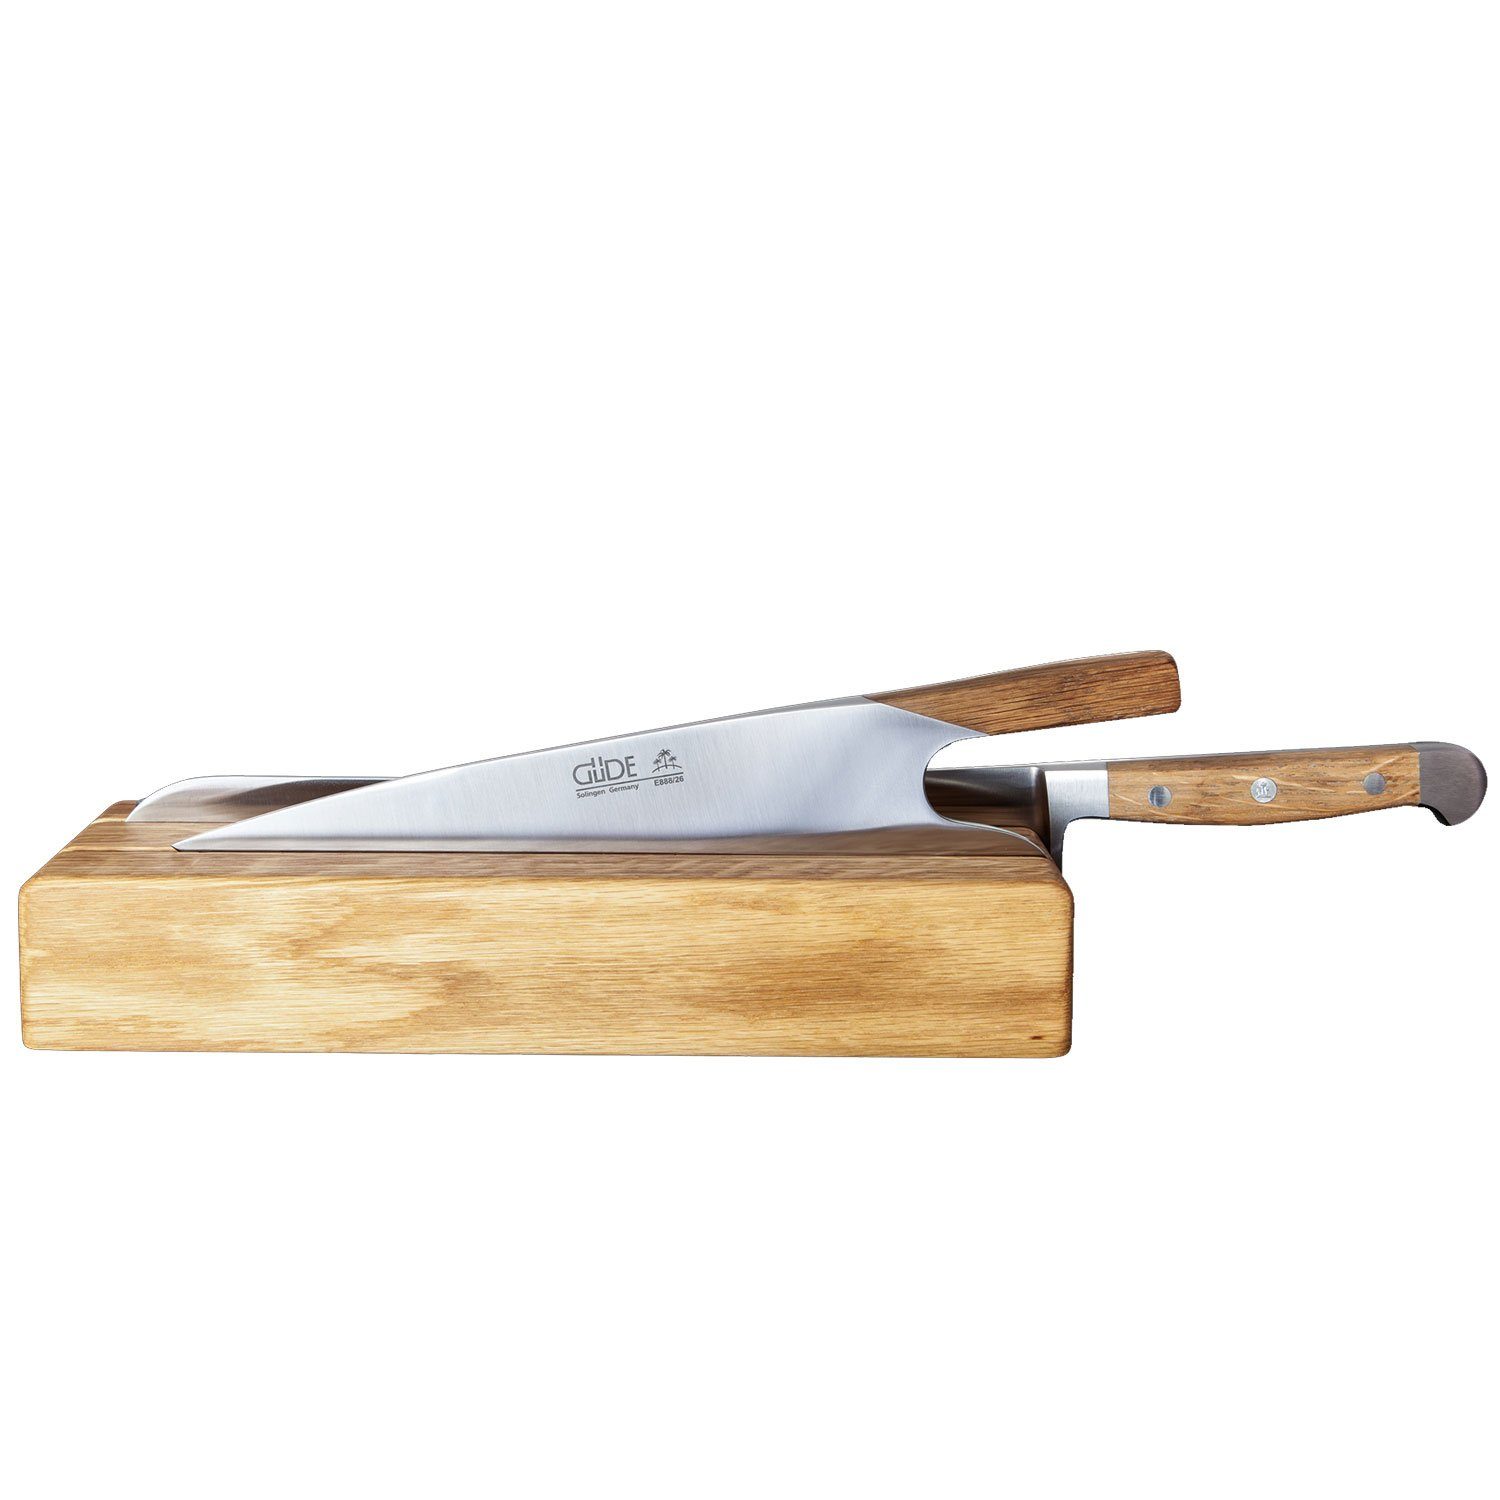 Messerblock (1tlg) Knife und für Messer - Franz Güde Güde 002/32 Brotmesser Eichenholz Solingen großes Messerhalter No. The